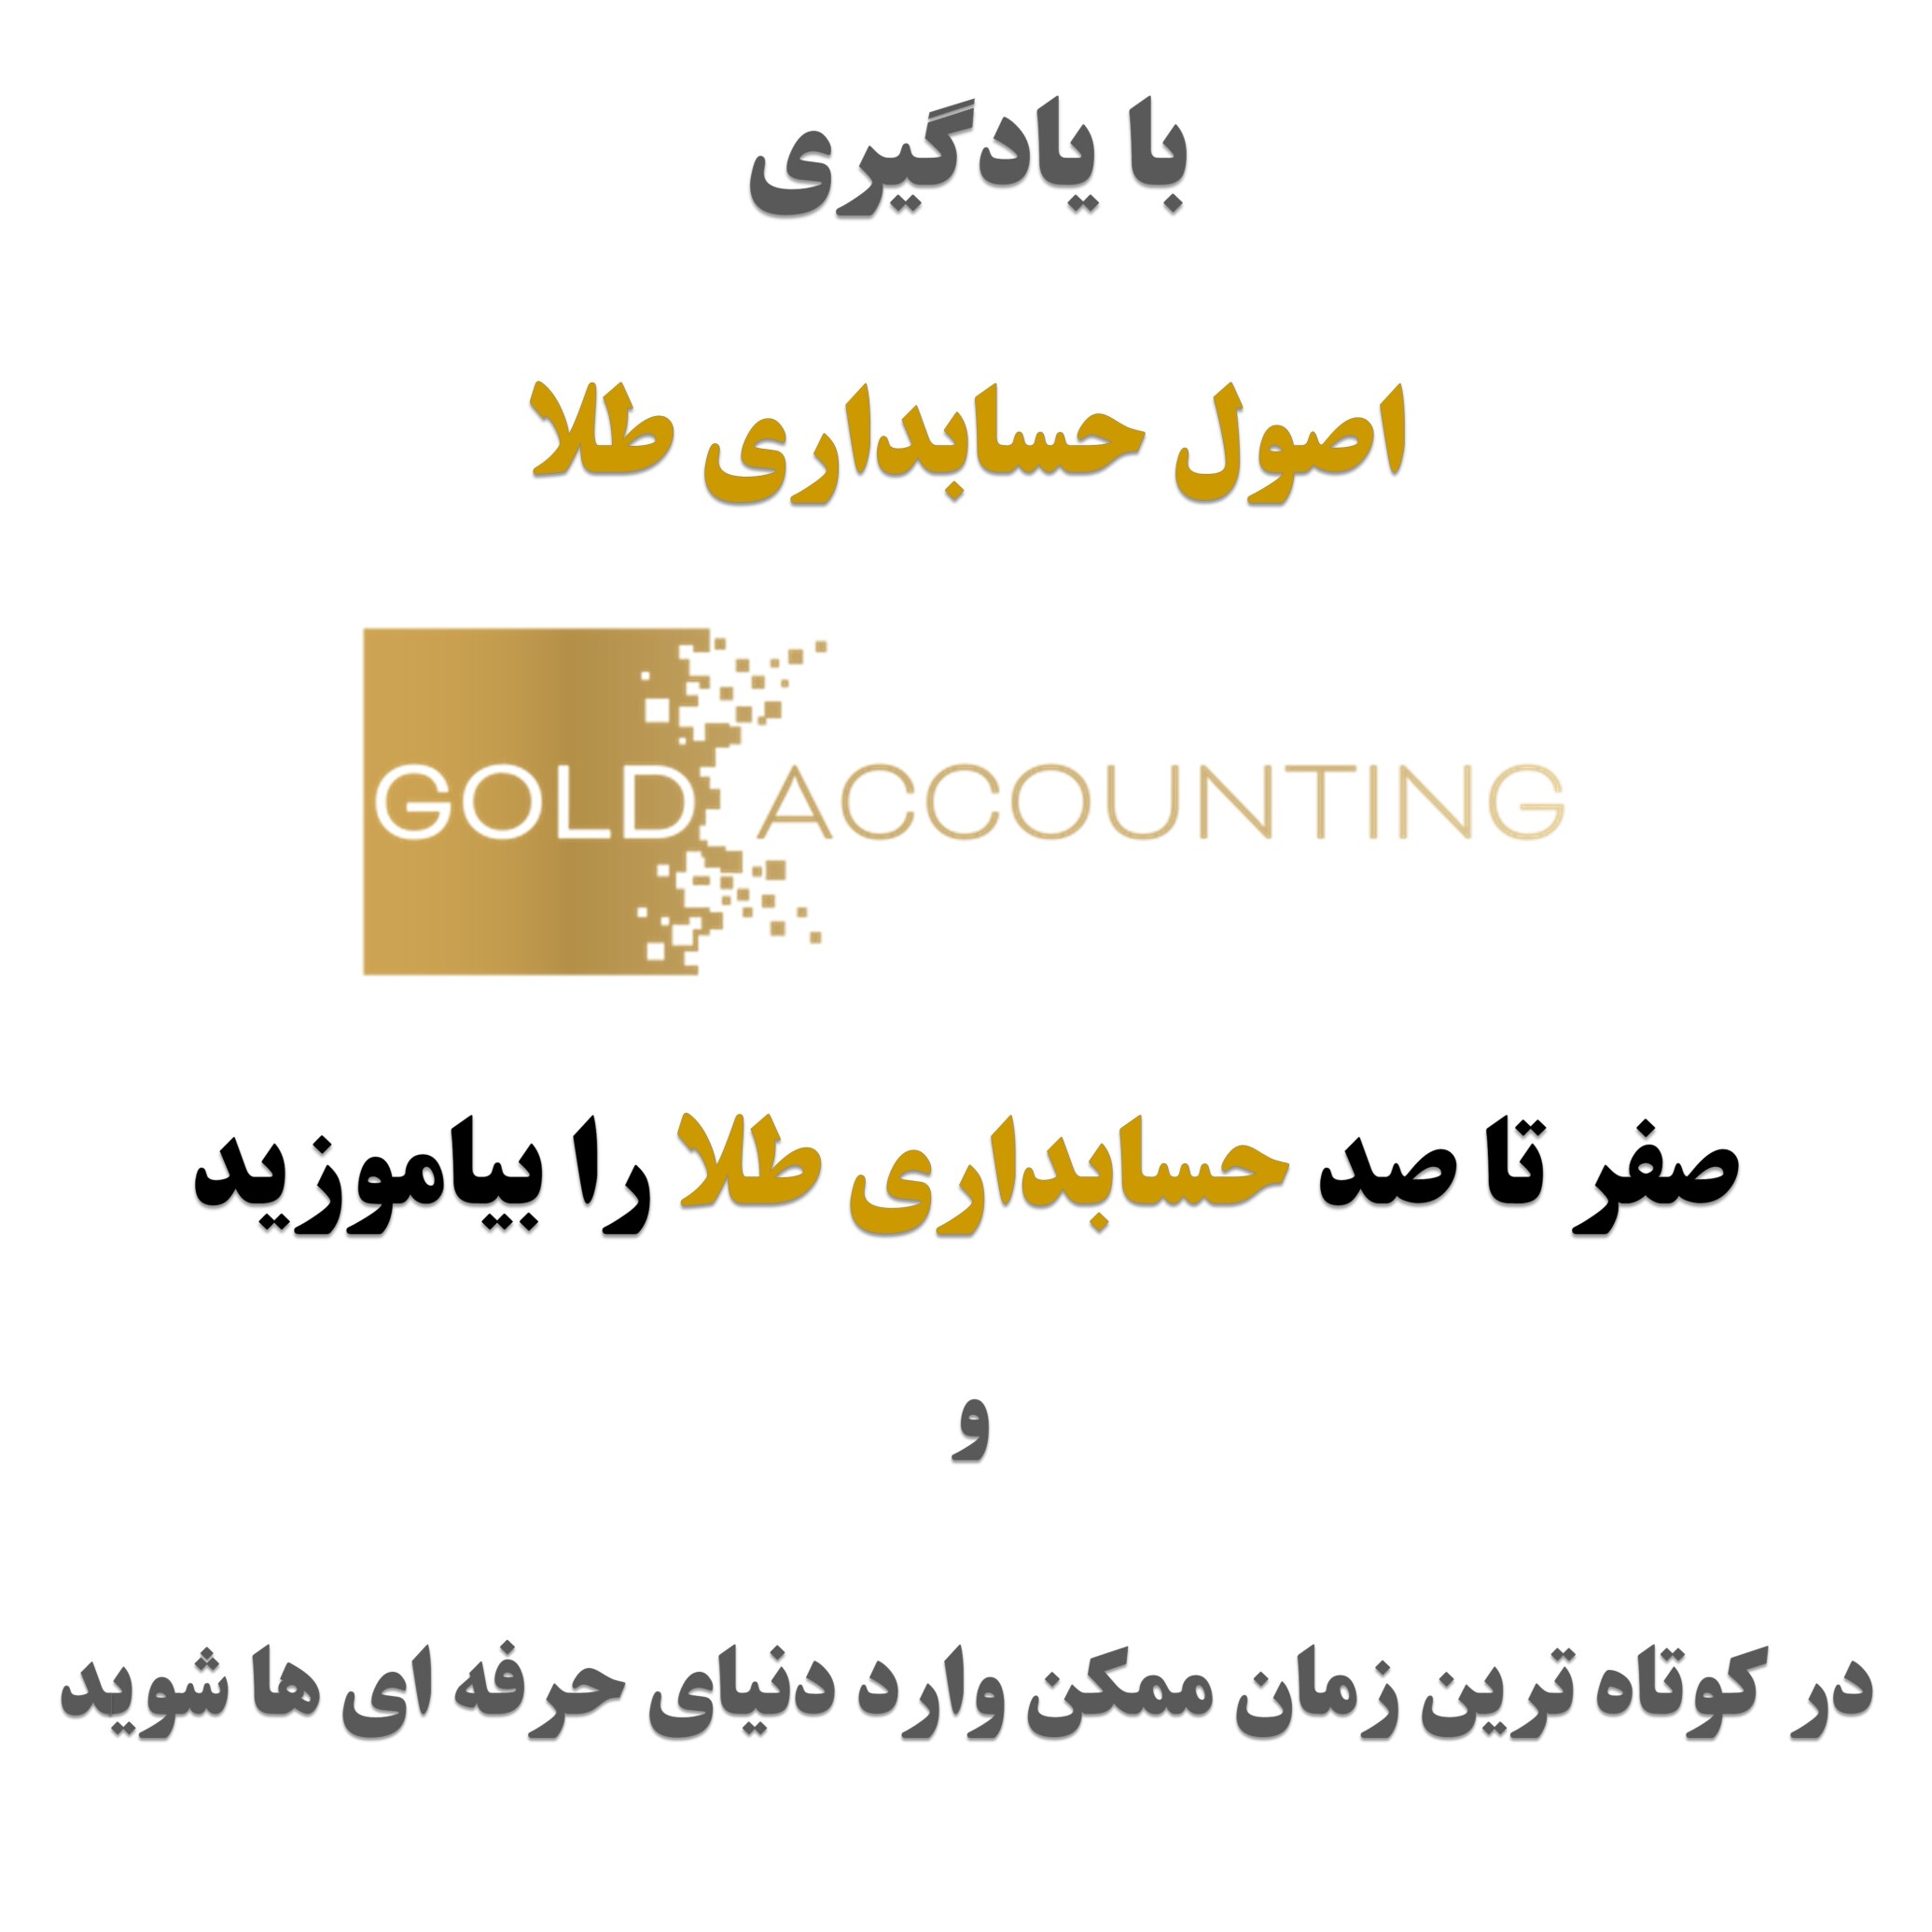  دوره آموزشی حسابداری طلا برای طلا فروشان 